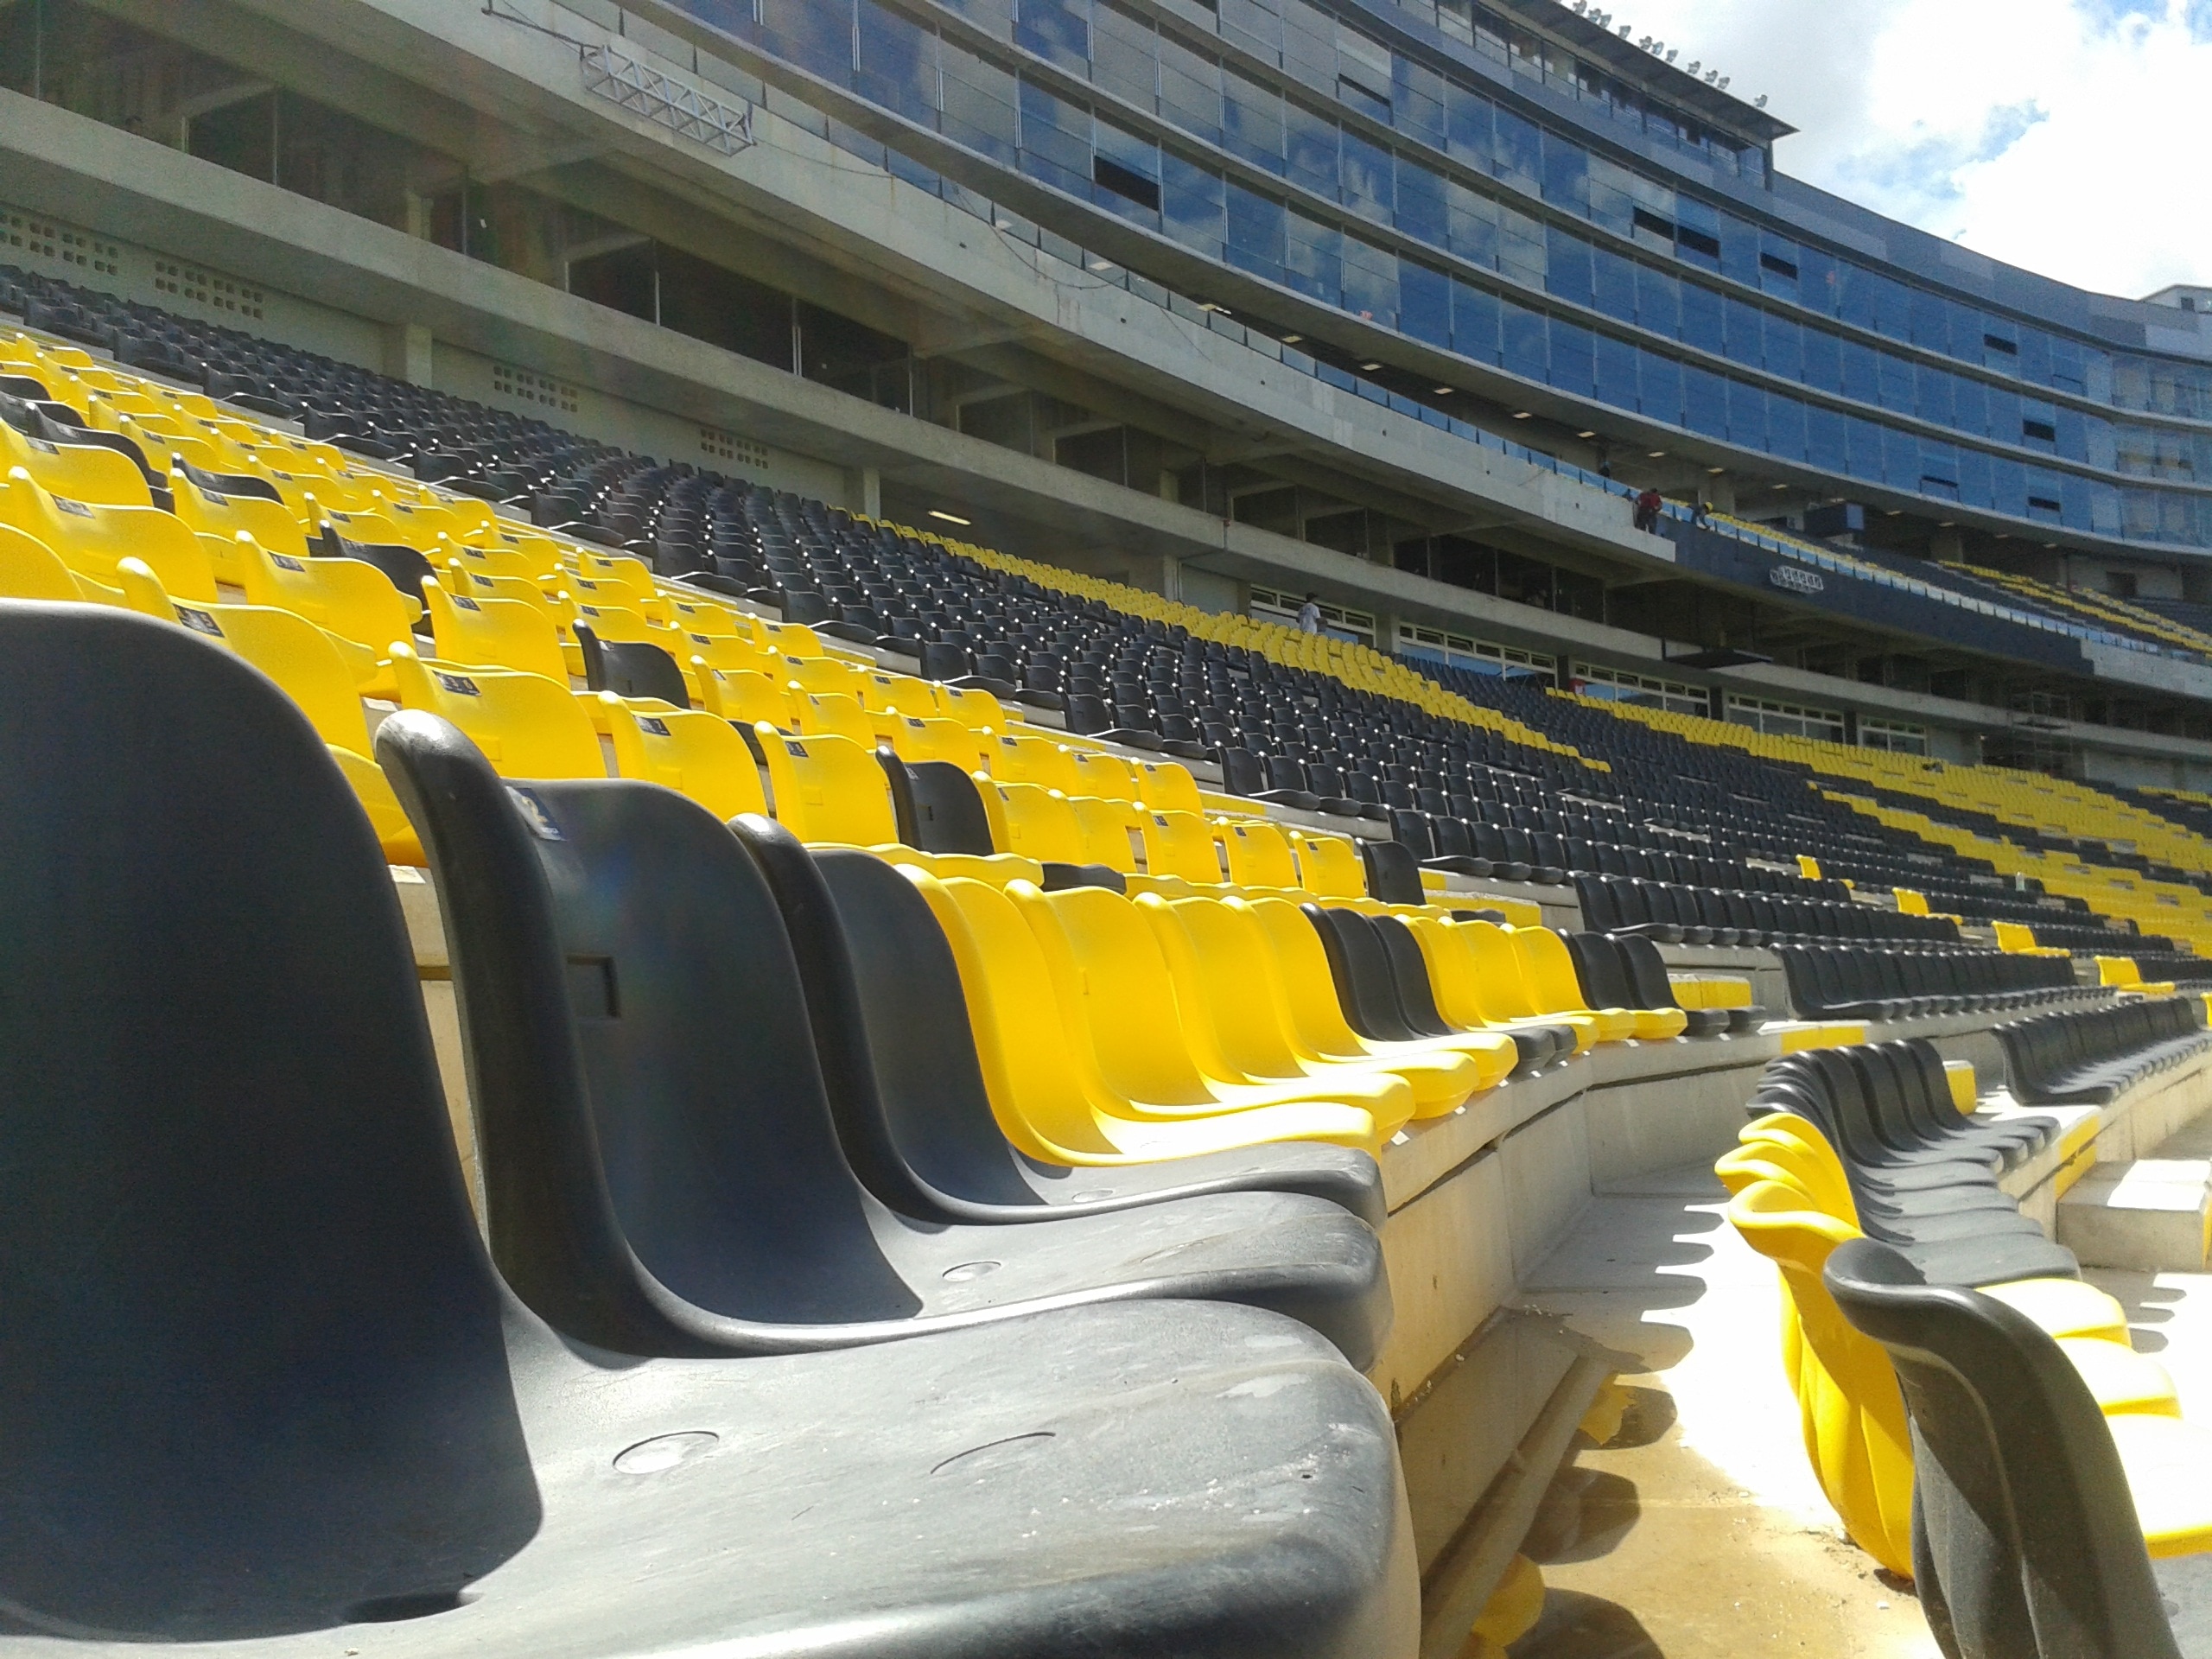 yellow and black plastic stadium chairs